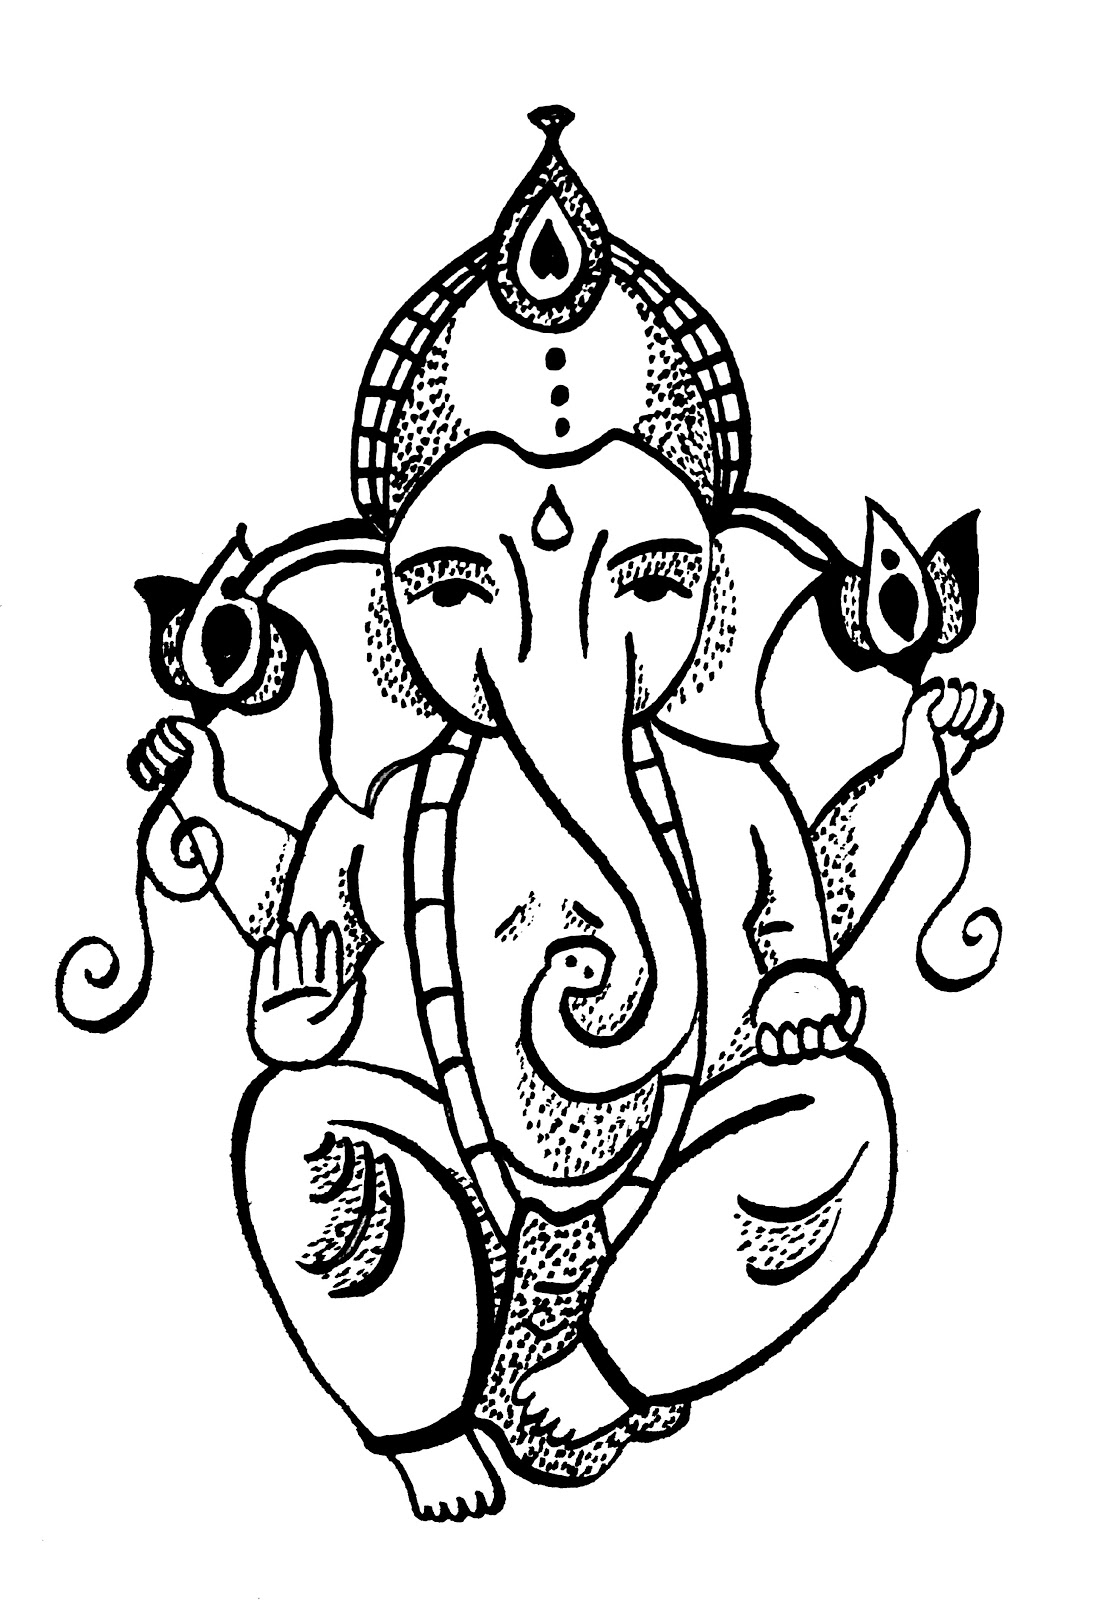 Malvorlage: Hinduistische Mythologie (Götter und Göttinnen) #109335 - Kostenlose Malvorlagen zum Ausdrucken